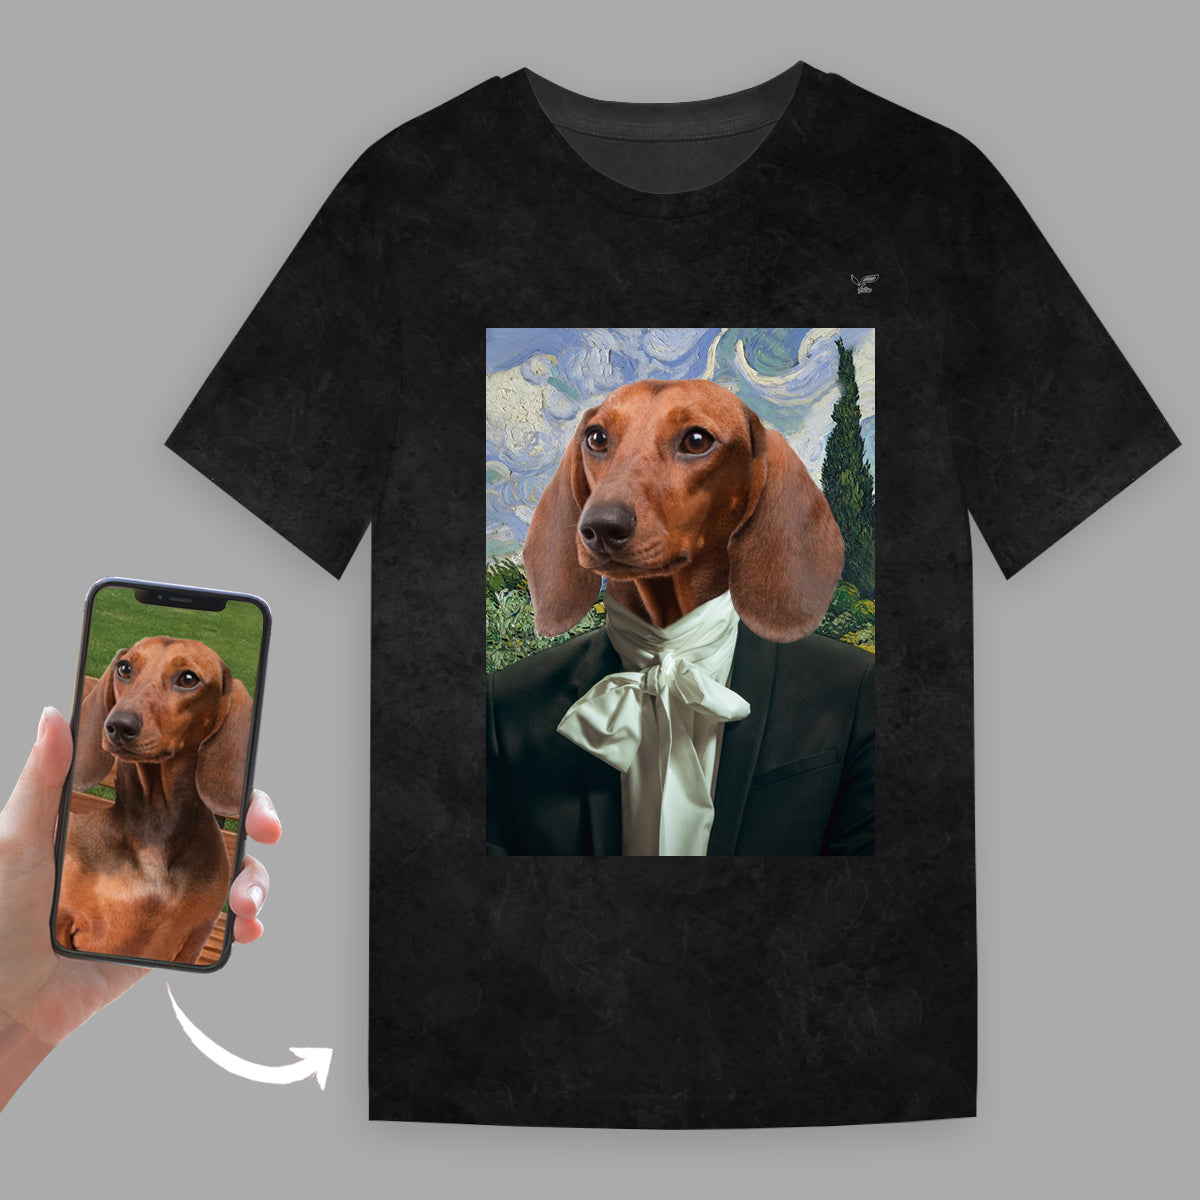 L'Ambassadeur - T-Shirt Personnalisé Avec Photo de Votre Animal